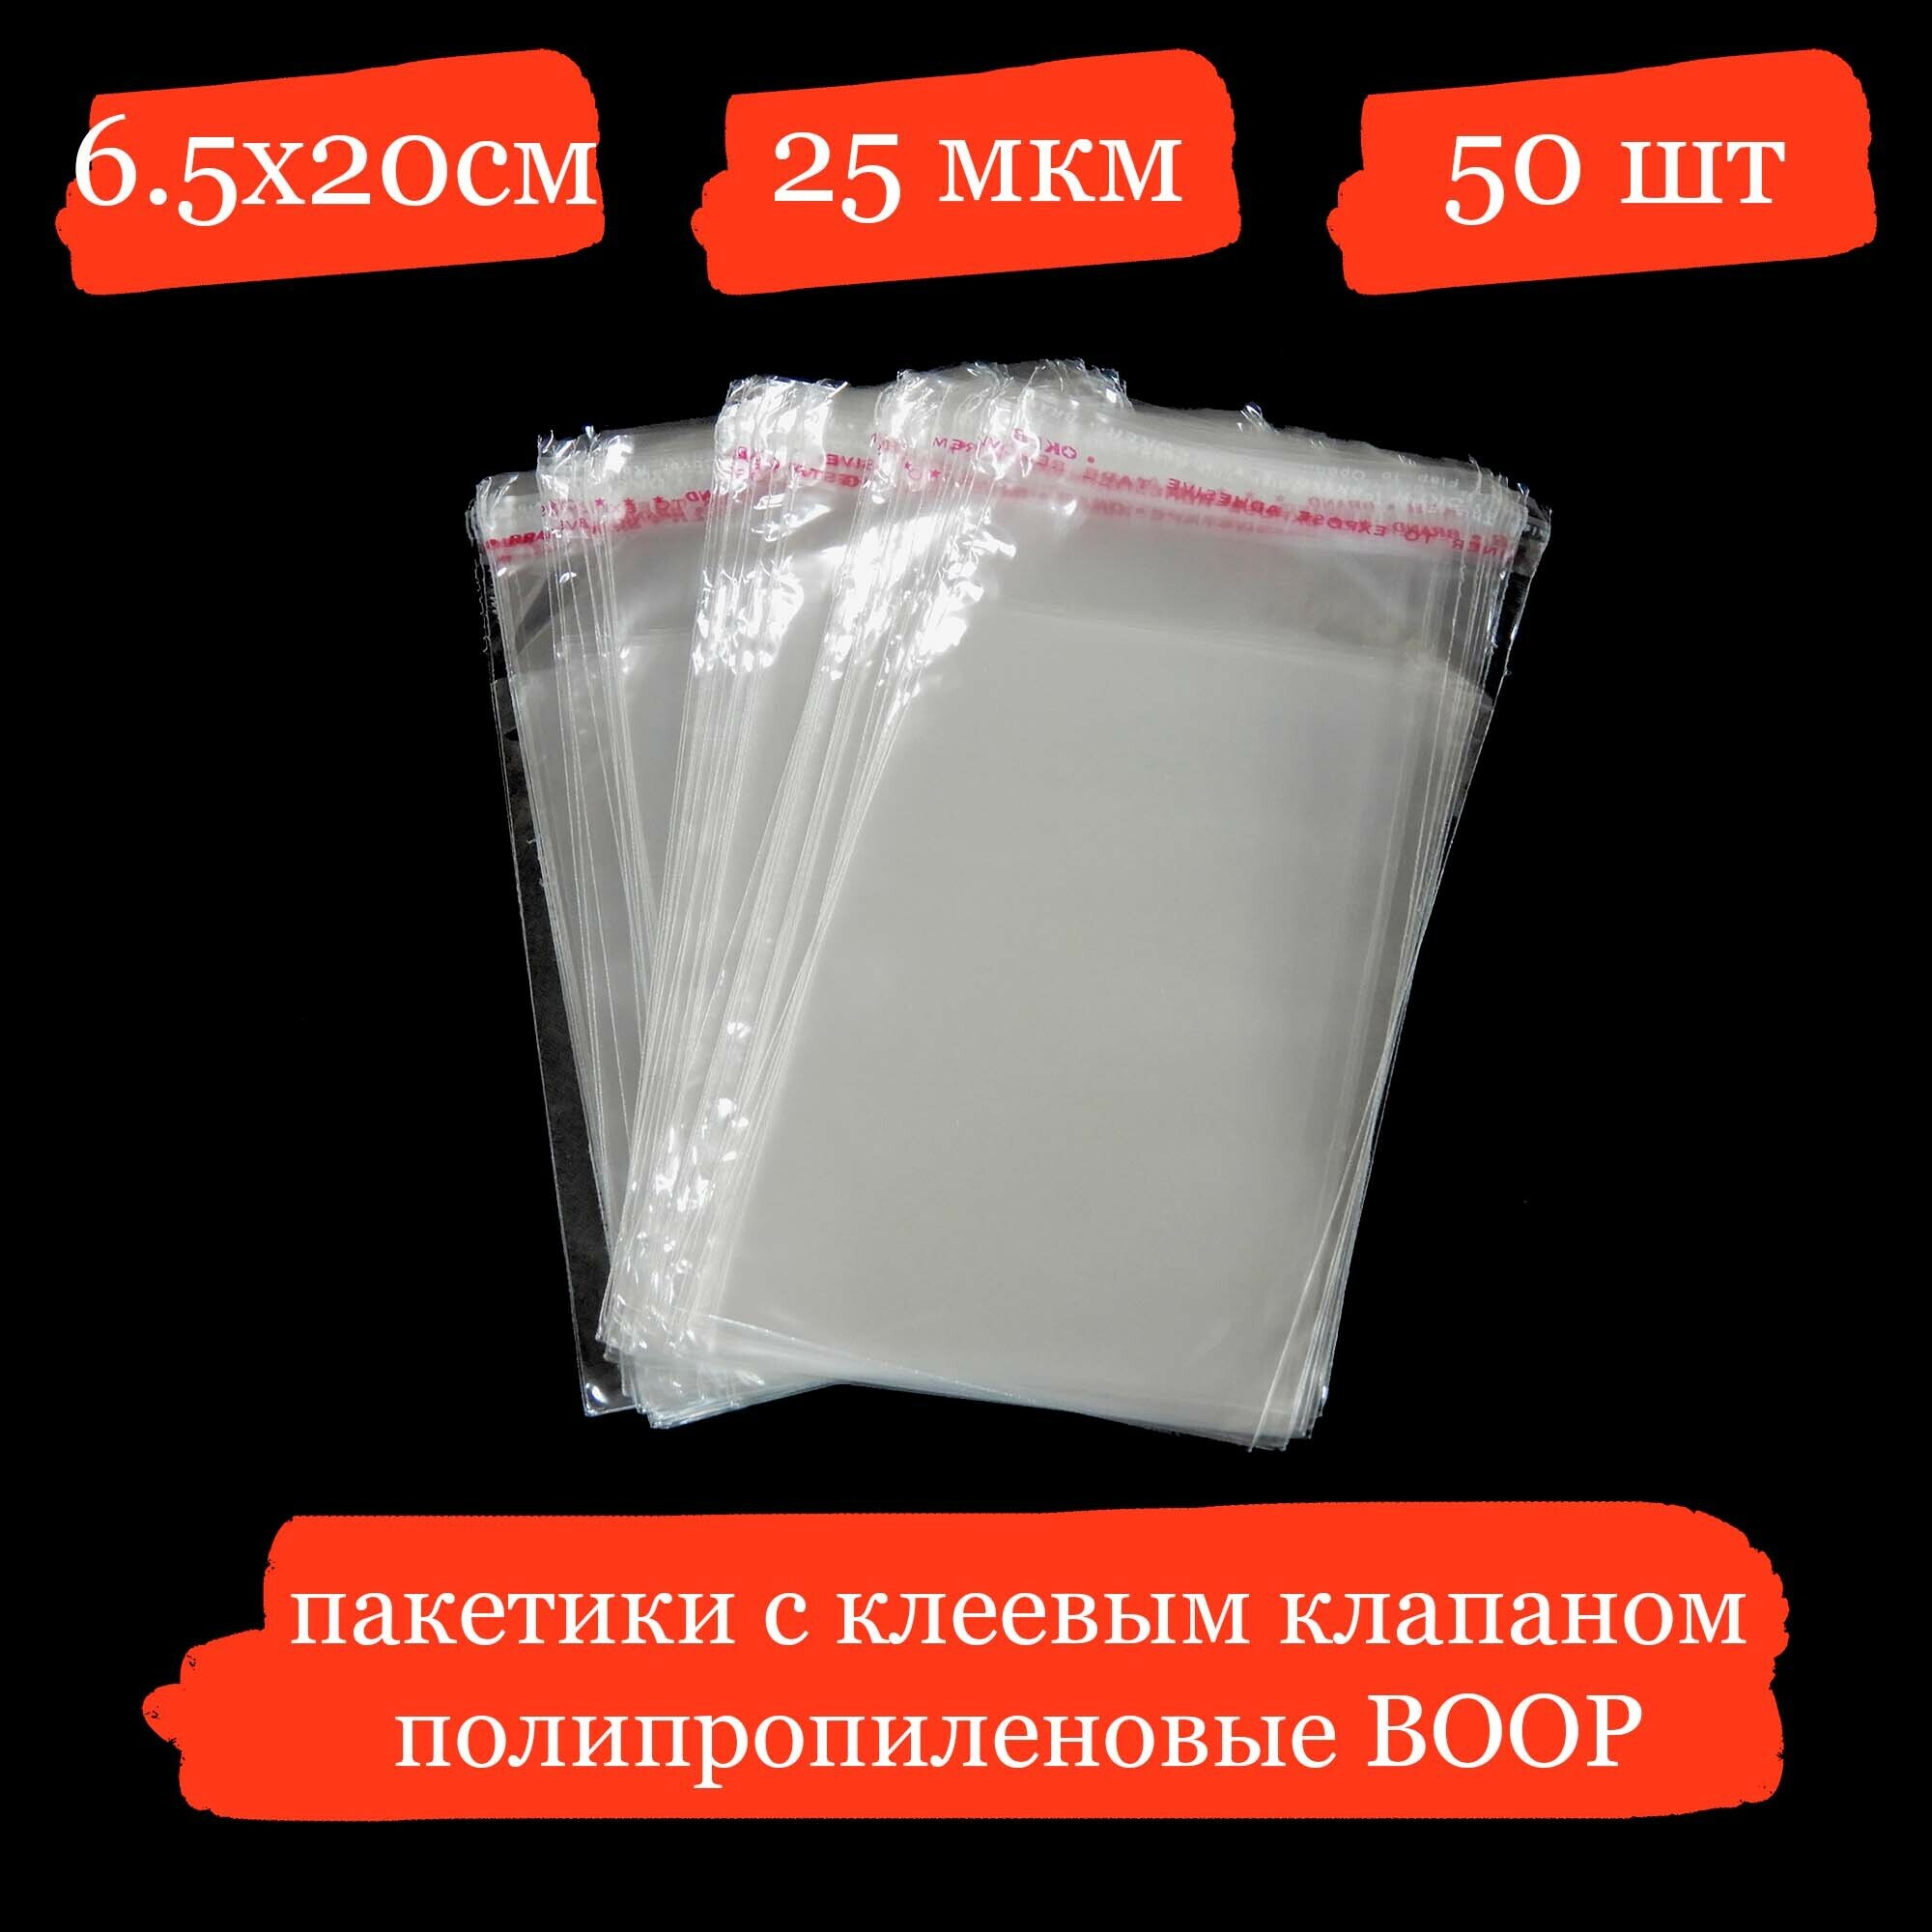 Полипропиленовые пакетики с клеевым клапаном - 6.5x20+4, 25 мкм - 50 шт.